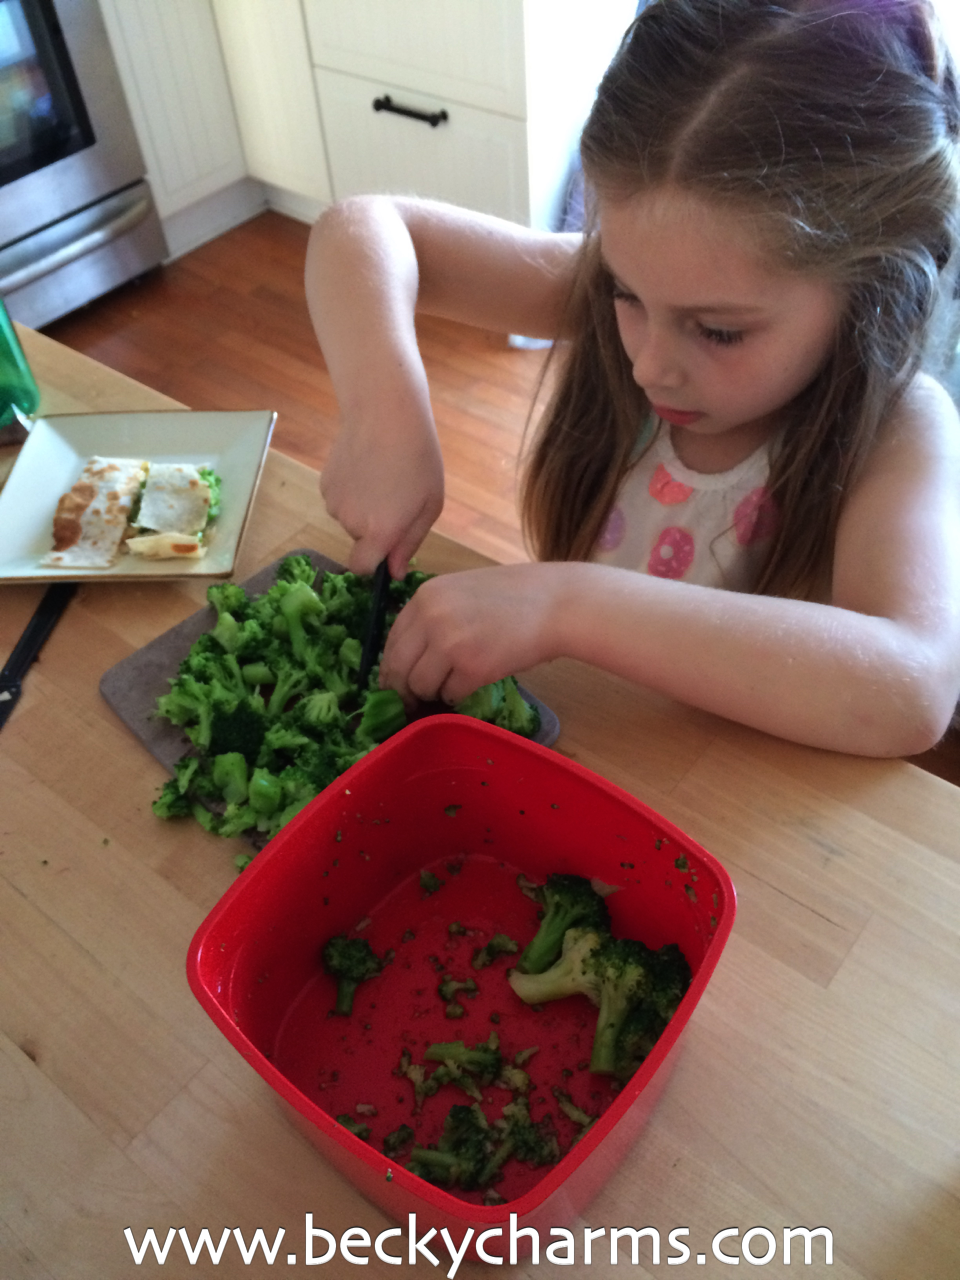 Cheddar Broccoli Vegetarian Quesadilla : The Fancy Quesadilla Series by BeckyCharms